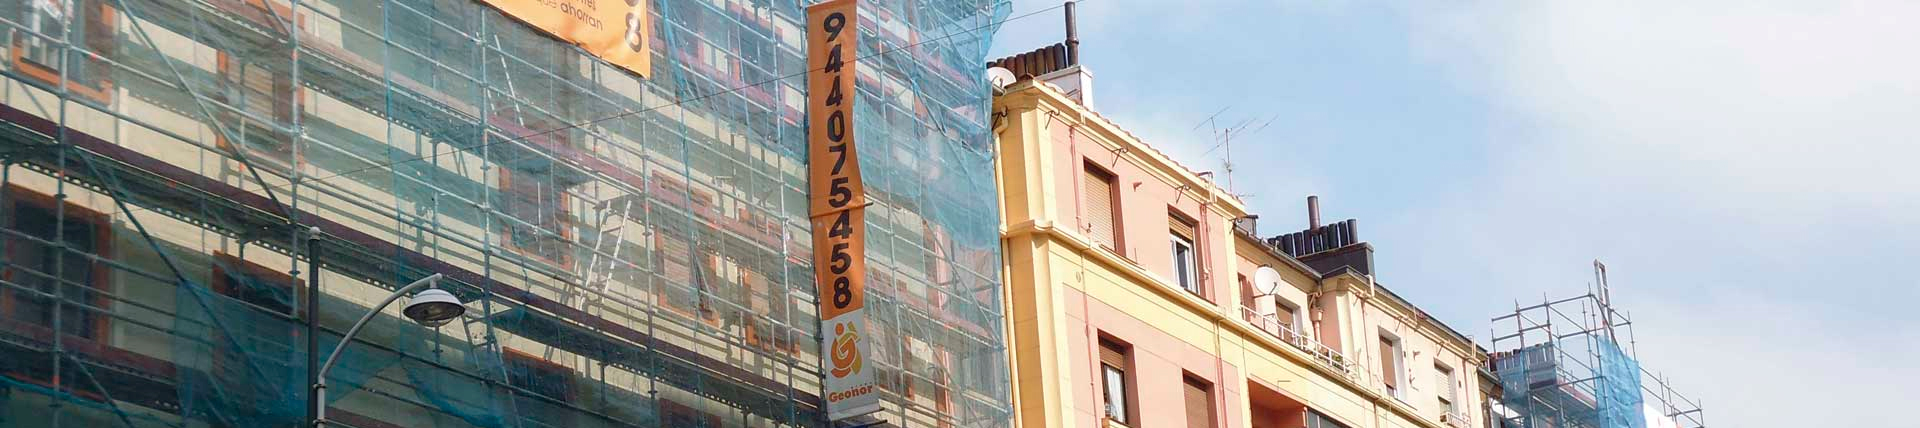 Rehabilitación de edificio en Bilbao realizada por Grupo Geonor Reformas y Construcciones